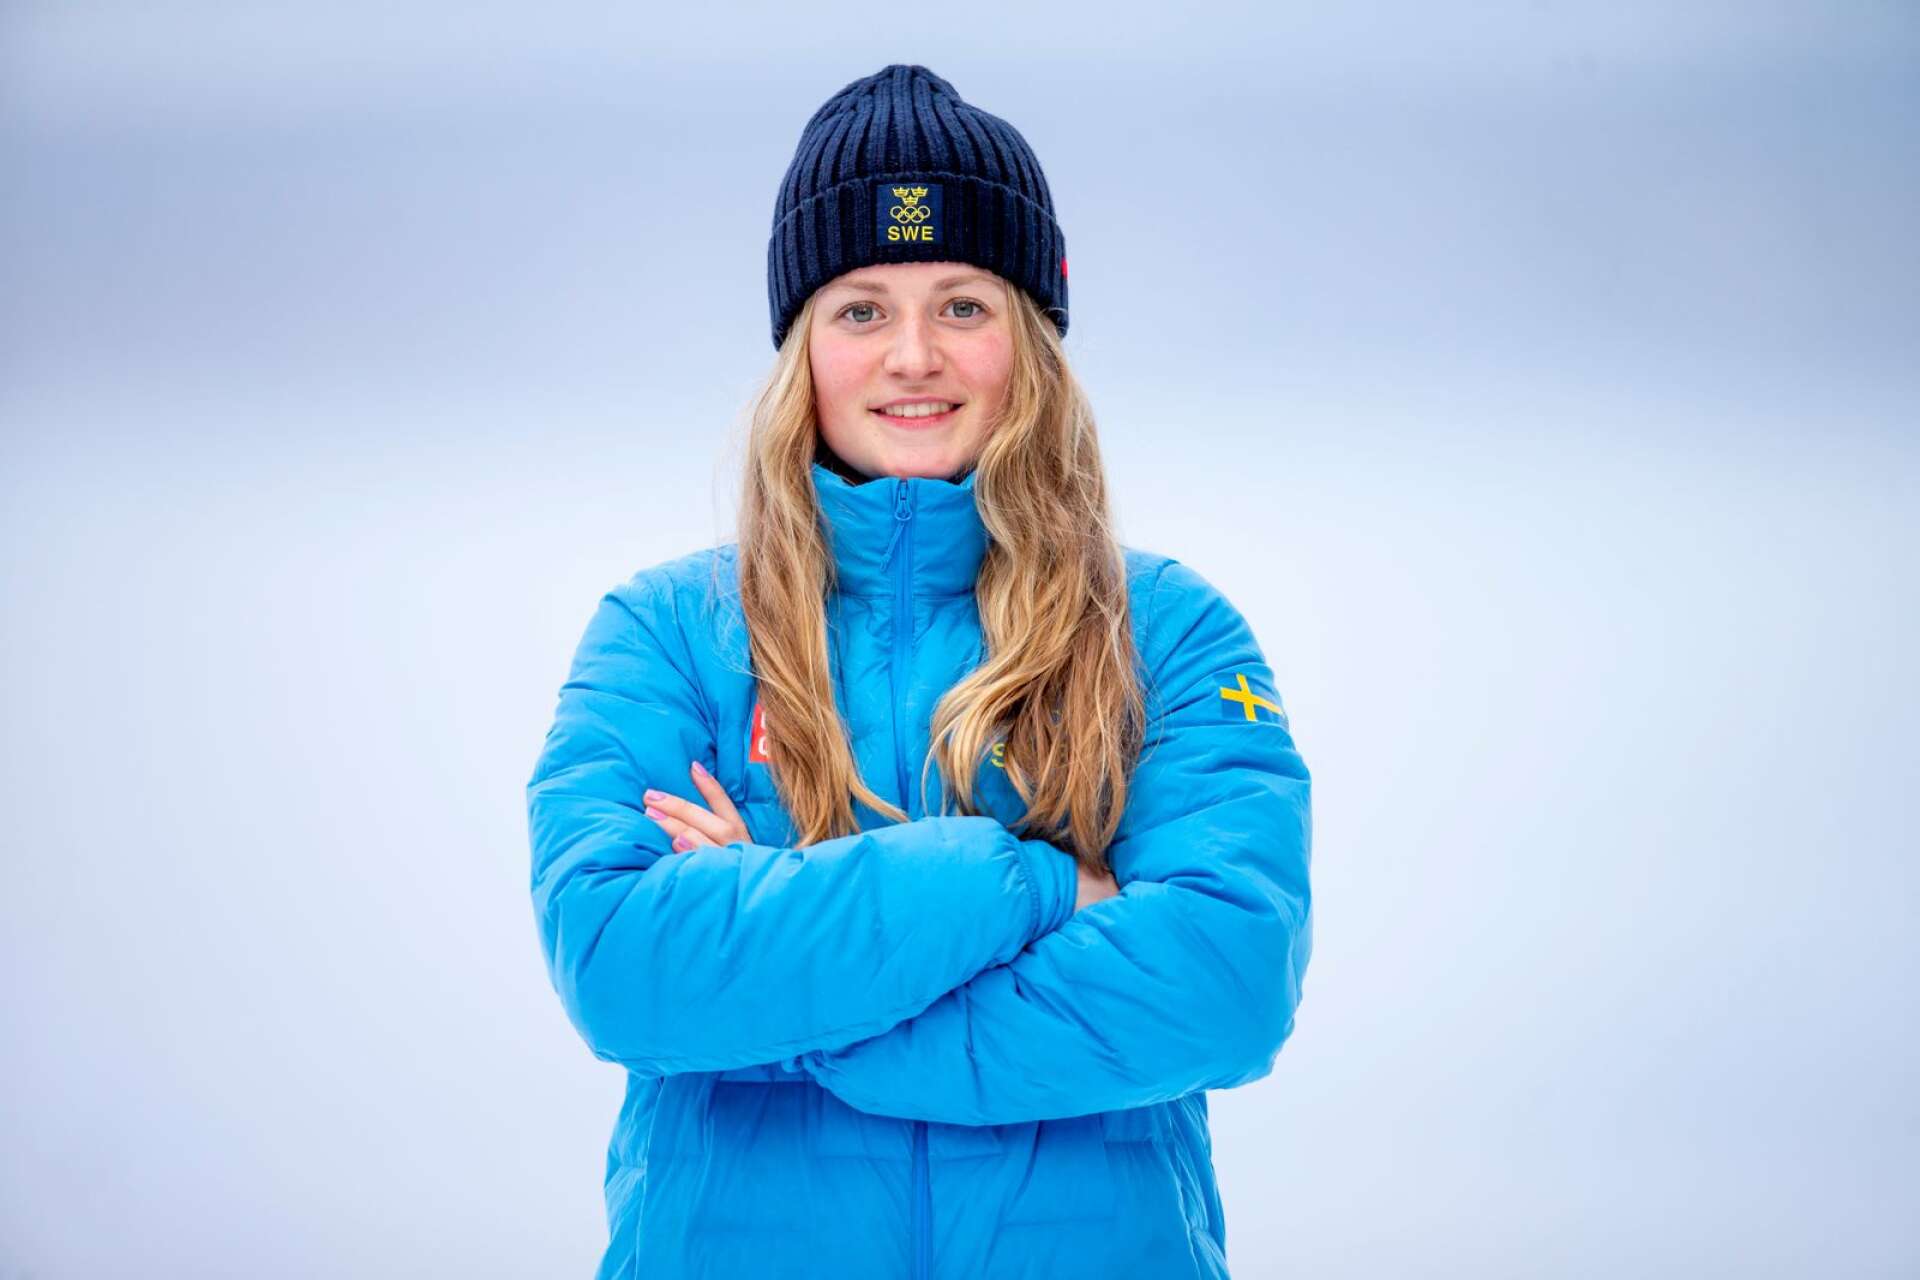 En ny svensk slalomåkare som ger eko i alpinvärlden är Värmländska Hanna Aronsson Elfman som tävlar för Kils SLK. Hon slog igenom stort under 2022 med plats i OS laget där hon deltog i Storslalom och Teamparallell. I världscupen slog hon till med ett sensationellt monstruöst andraåk och blev fyra i italienska Sestriere samt att hon har 3 top 10 placeringar i skrivande stund.